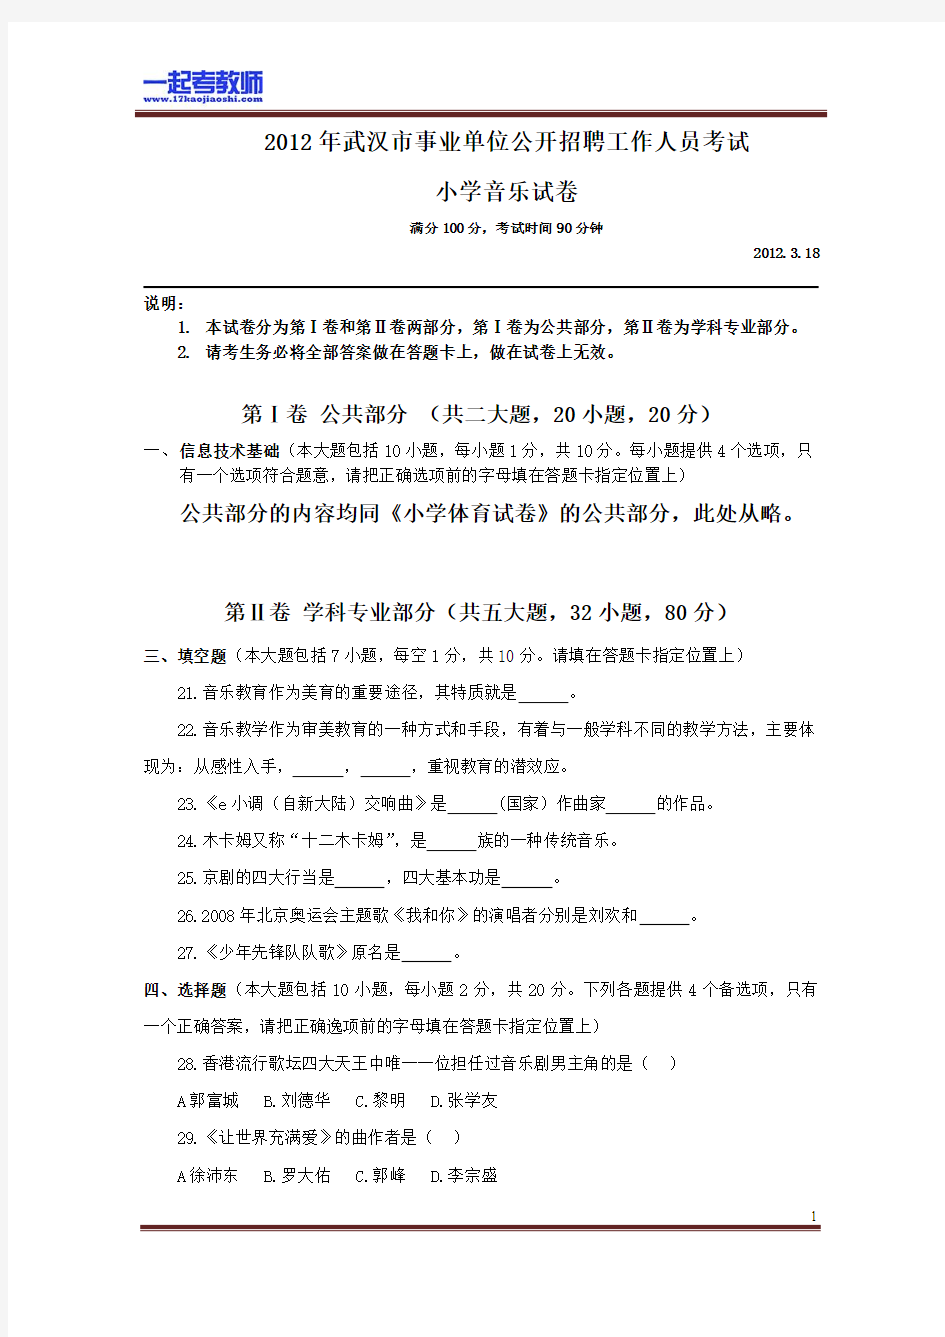 2012 湖北 武汉 教师招聘考试笔试 小学学段 音乐 真题答案解析